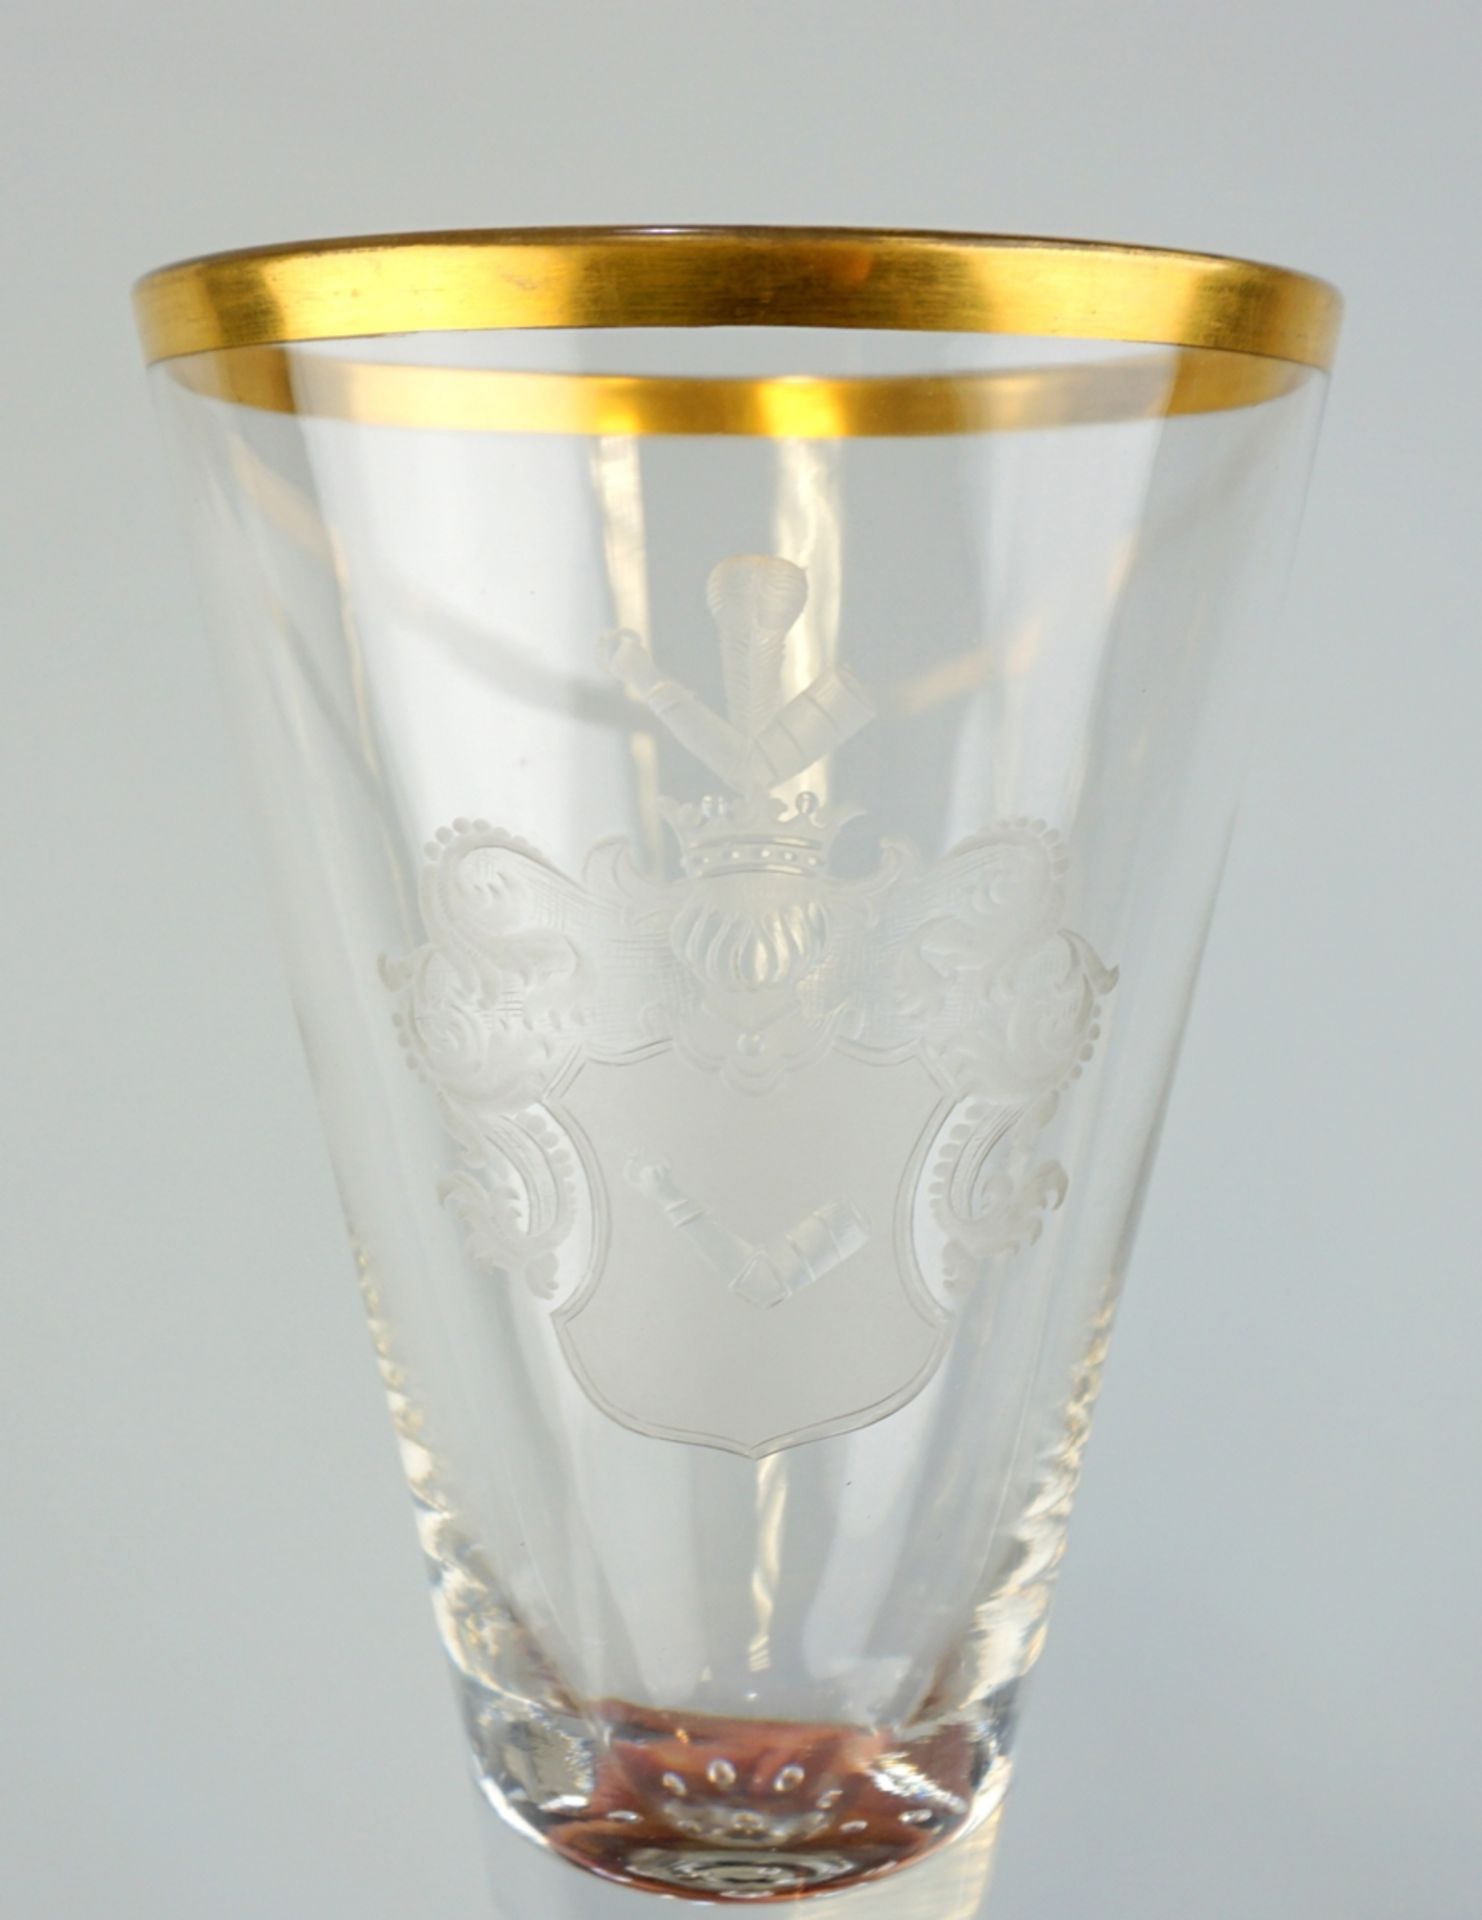 Pokalglas mit gravierten Wappen der Adelsfamilie von Oelsen im Mattschliff, Josephinenhütte, um 189 - Bild 2 aus 3